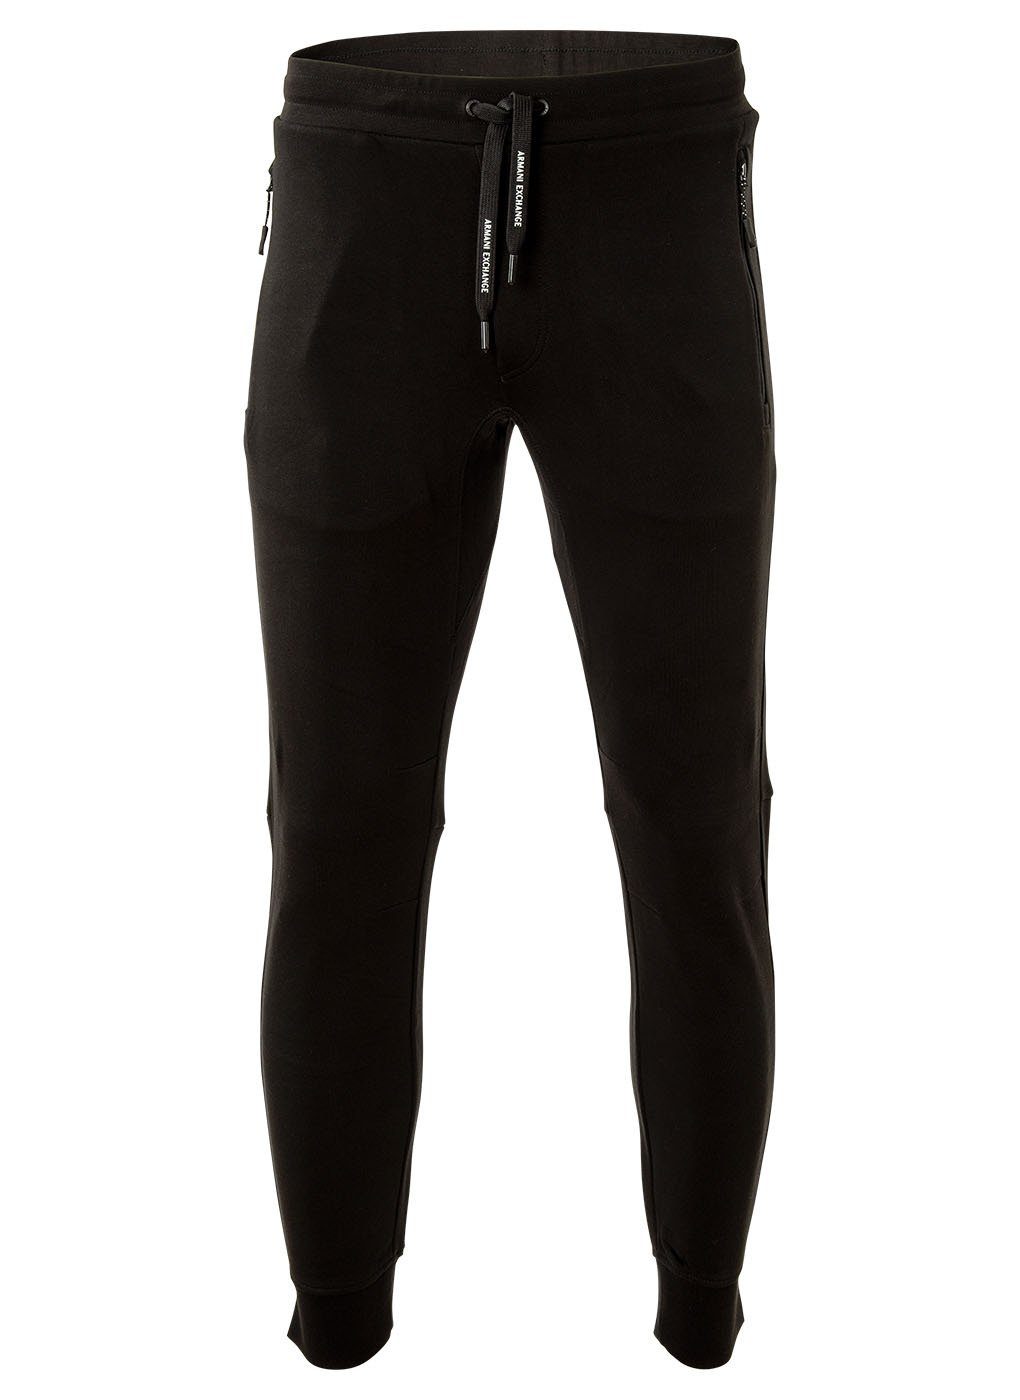 ARMANI EXCHANGE Jogginghose Herren Jogginghose - Loungewear Pants, lang Schwarz